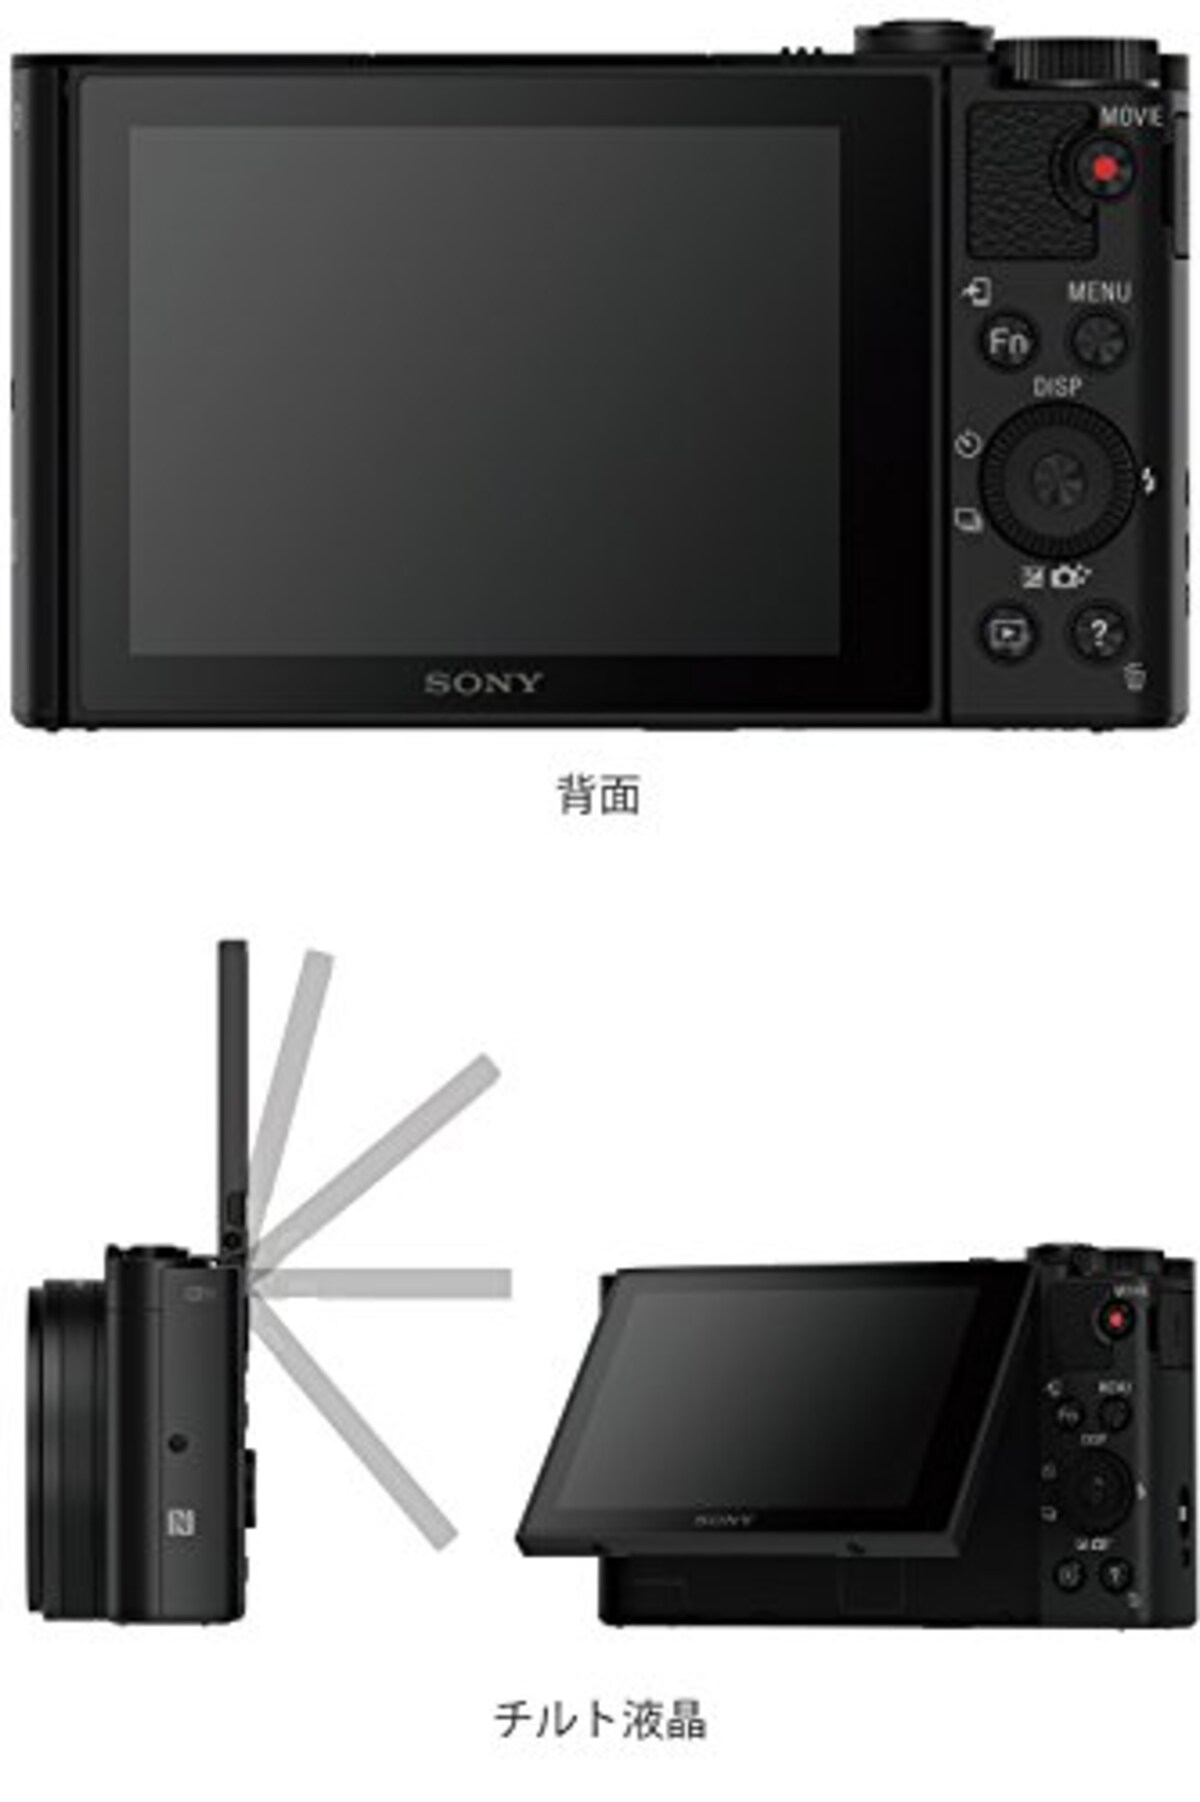  【WX500 と ジャケットケース セット】 大切なカメラをキズや汚れからガードしたい方に。DSC-WX500 ブラック + LCJ-HWA画像3 